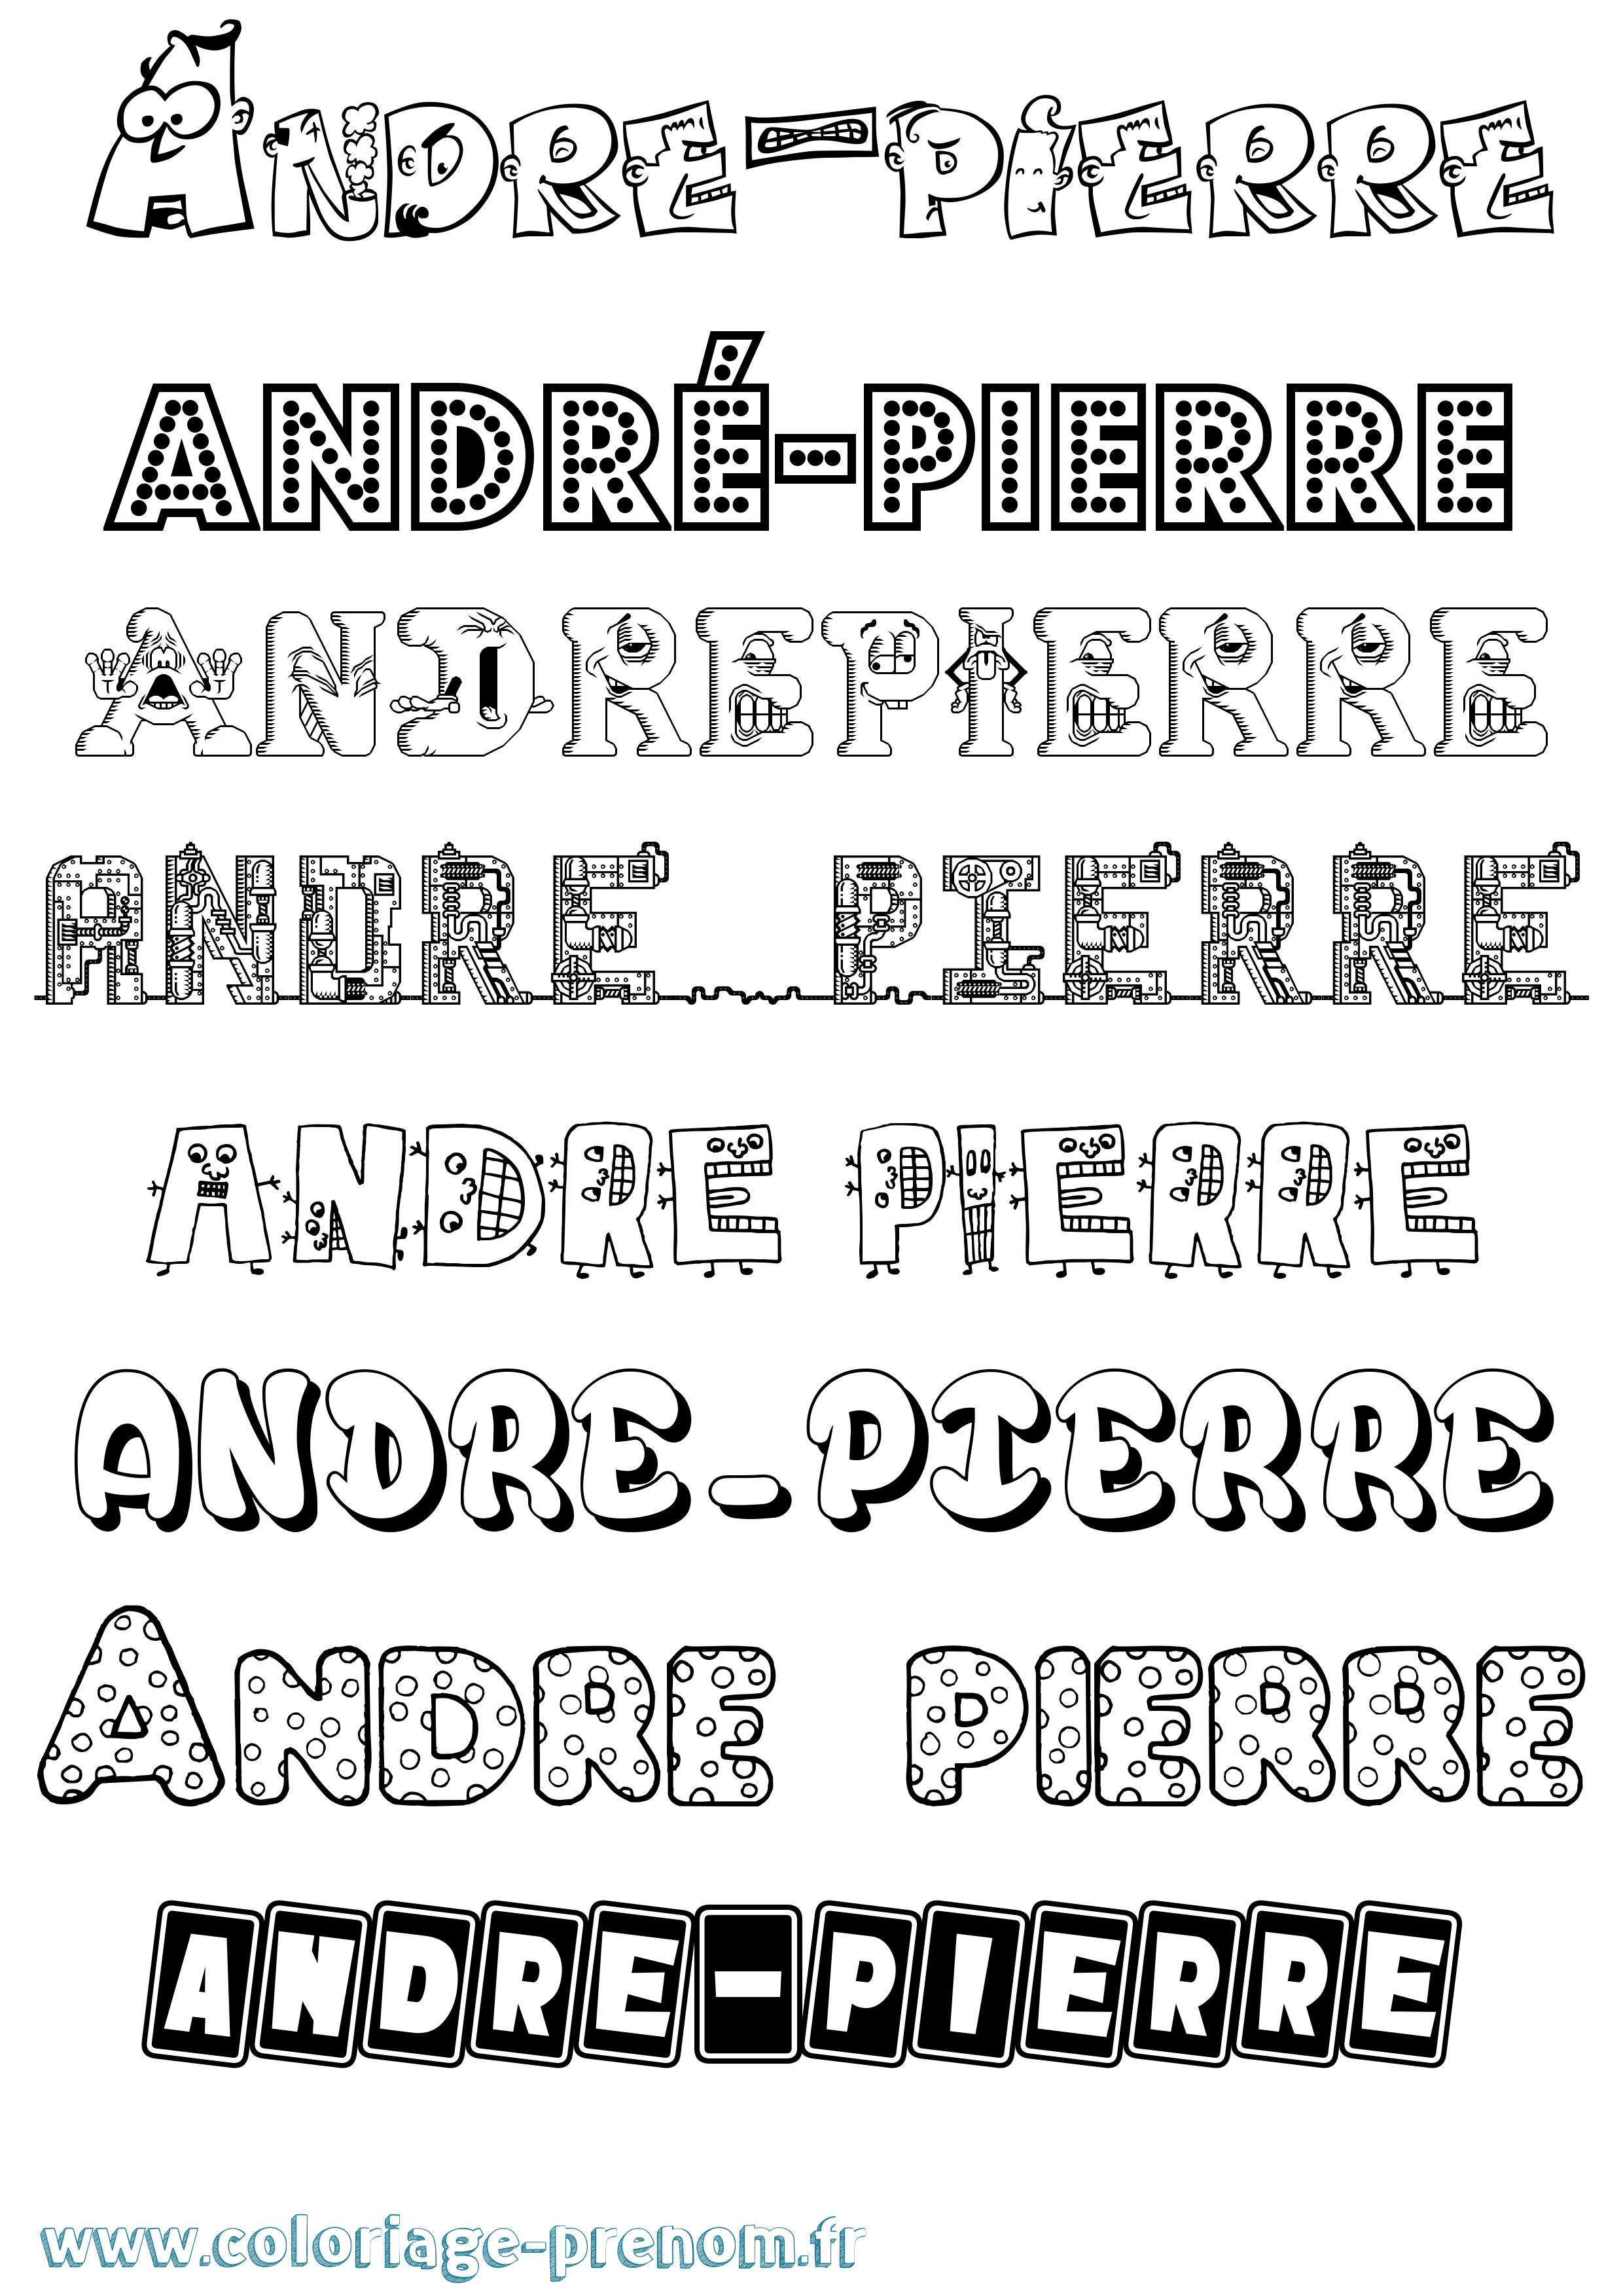 Coloriage prénom André-Pierre Fun